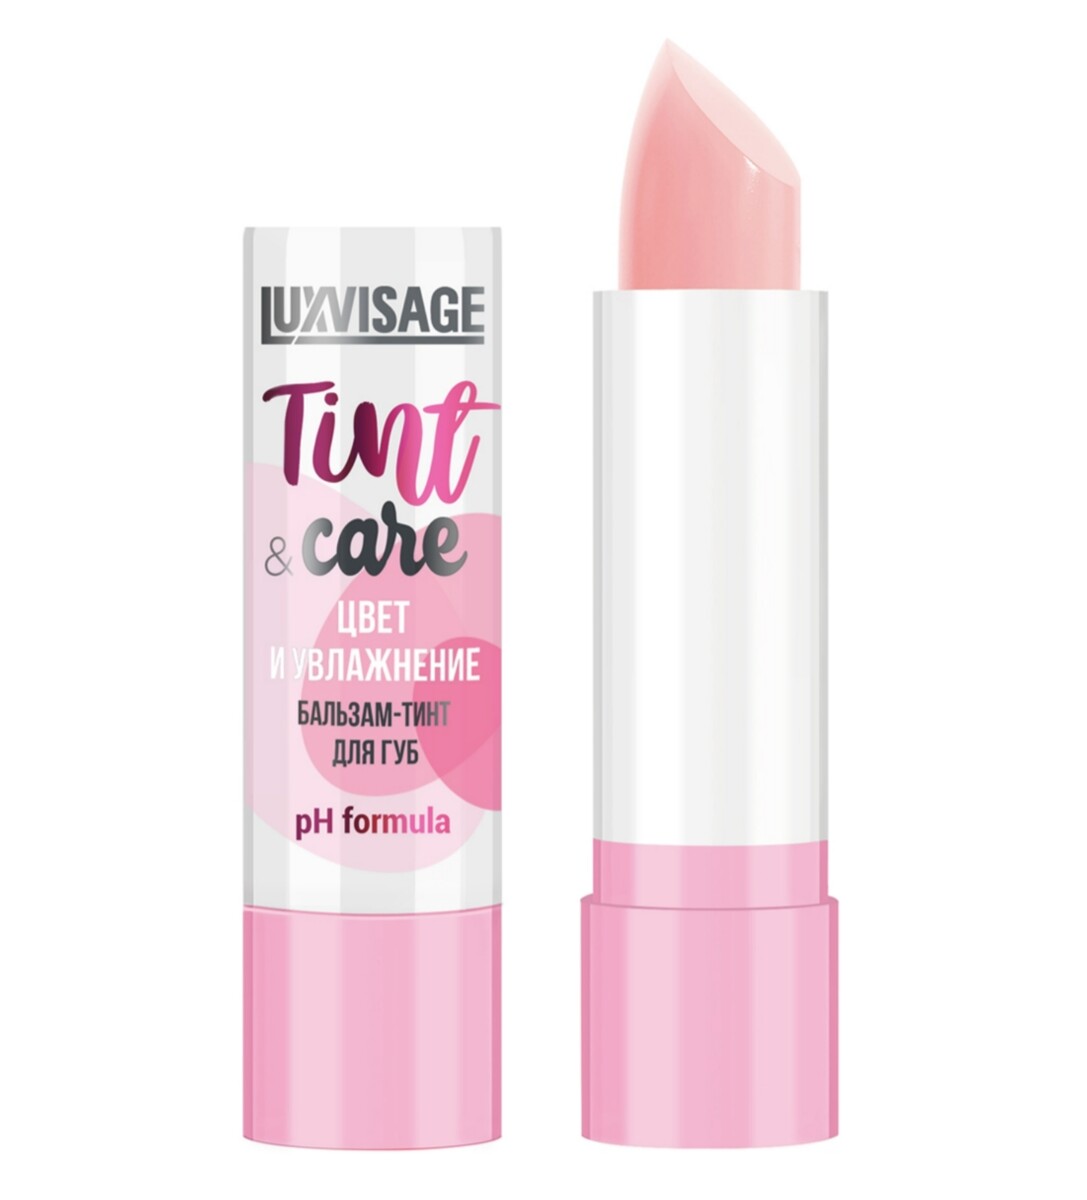 Luxvisage бальзам-тинт для губ luxvisage tint & care ph formula цвет и увлажнение тон 01 3,9г